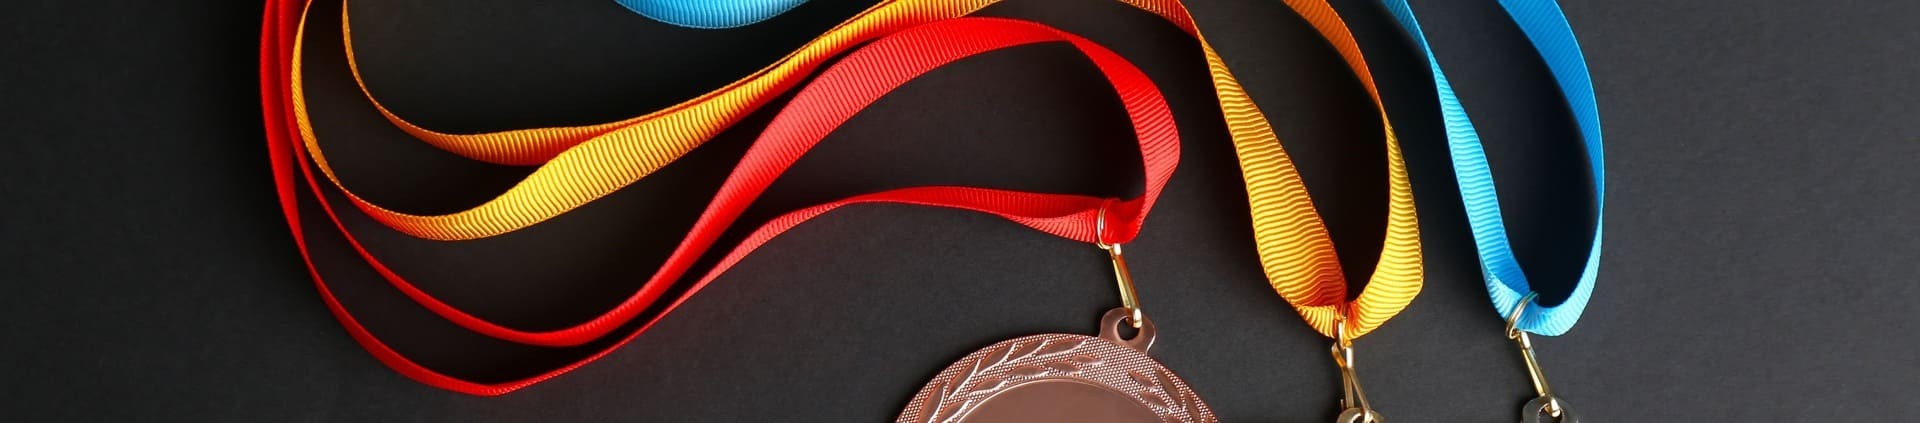 Wstążki do medali i odznaczeń - Powerman Sport